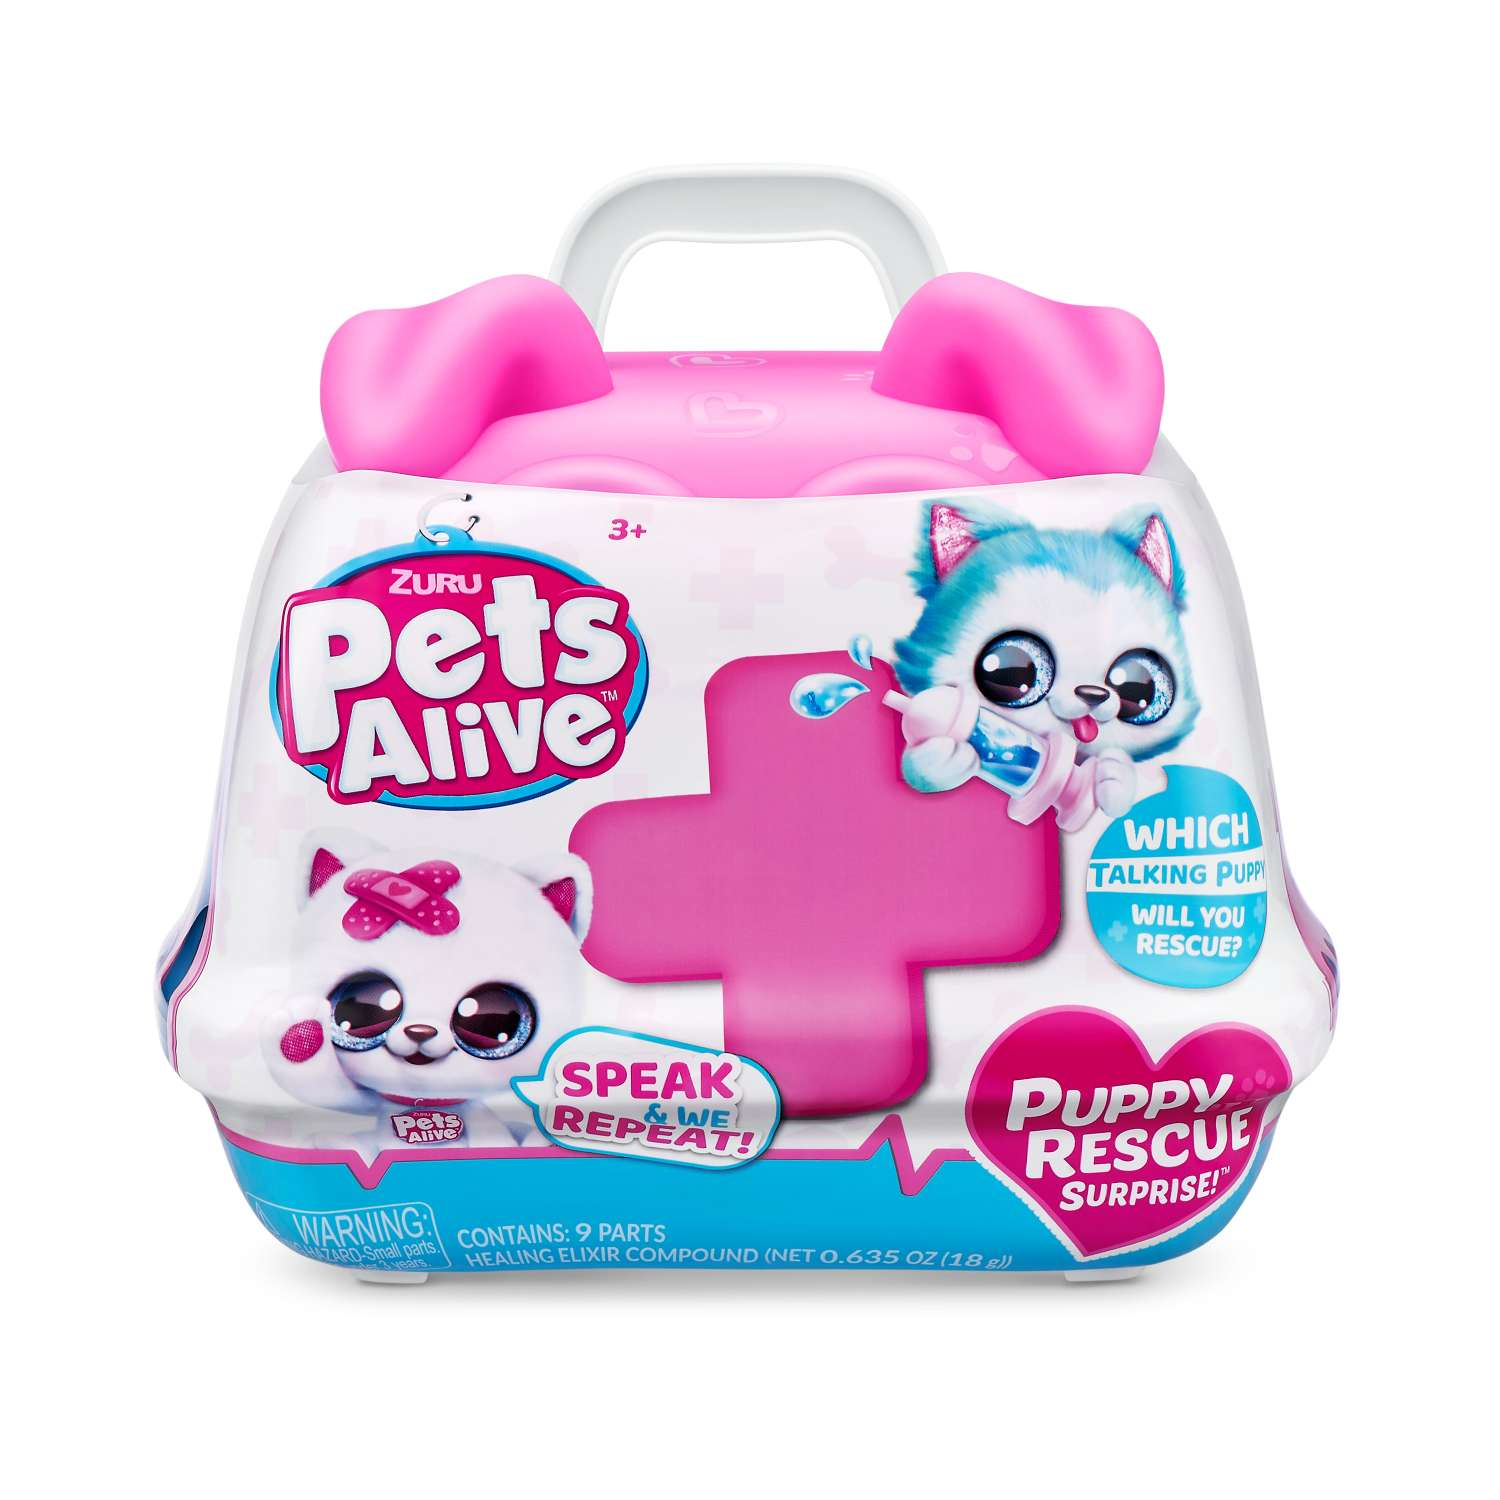 Игровой набор Pets Alive Puppy Rescue в ассортименте карнавальный набор пелерина белая со снежинками плюш юбка ободок рост 104 128